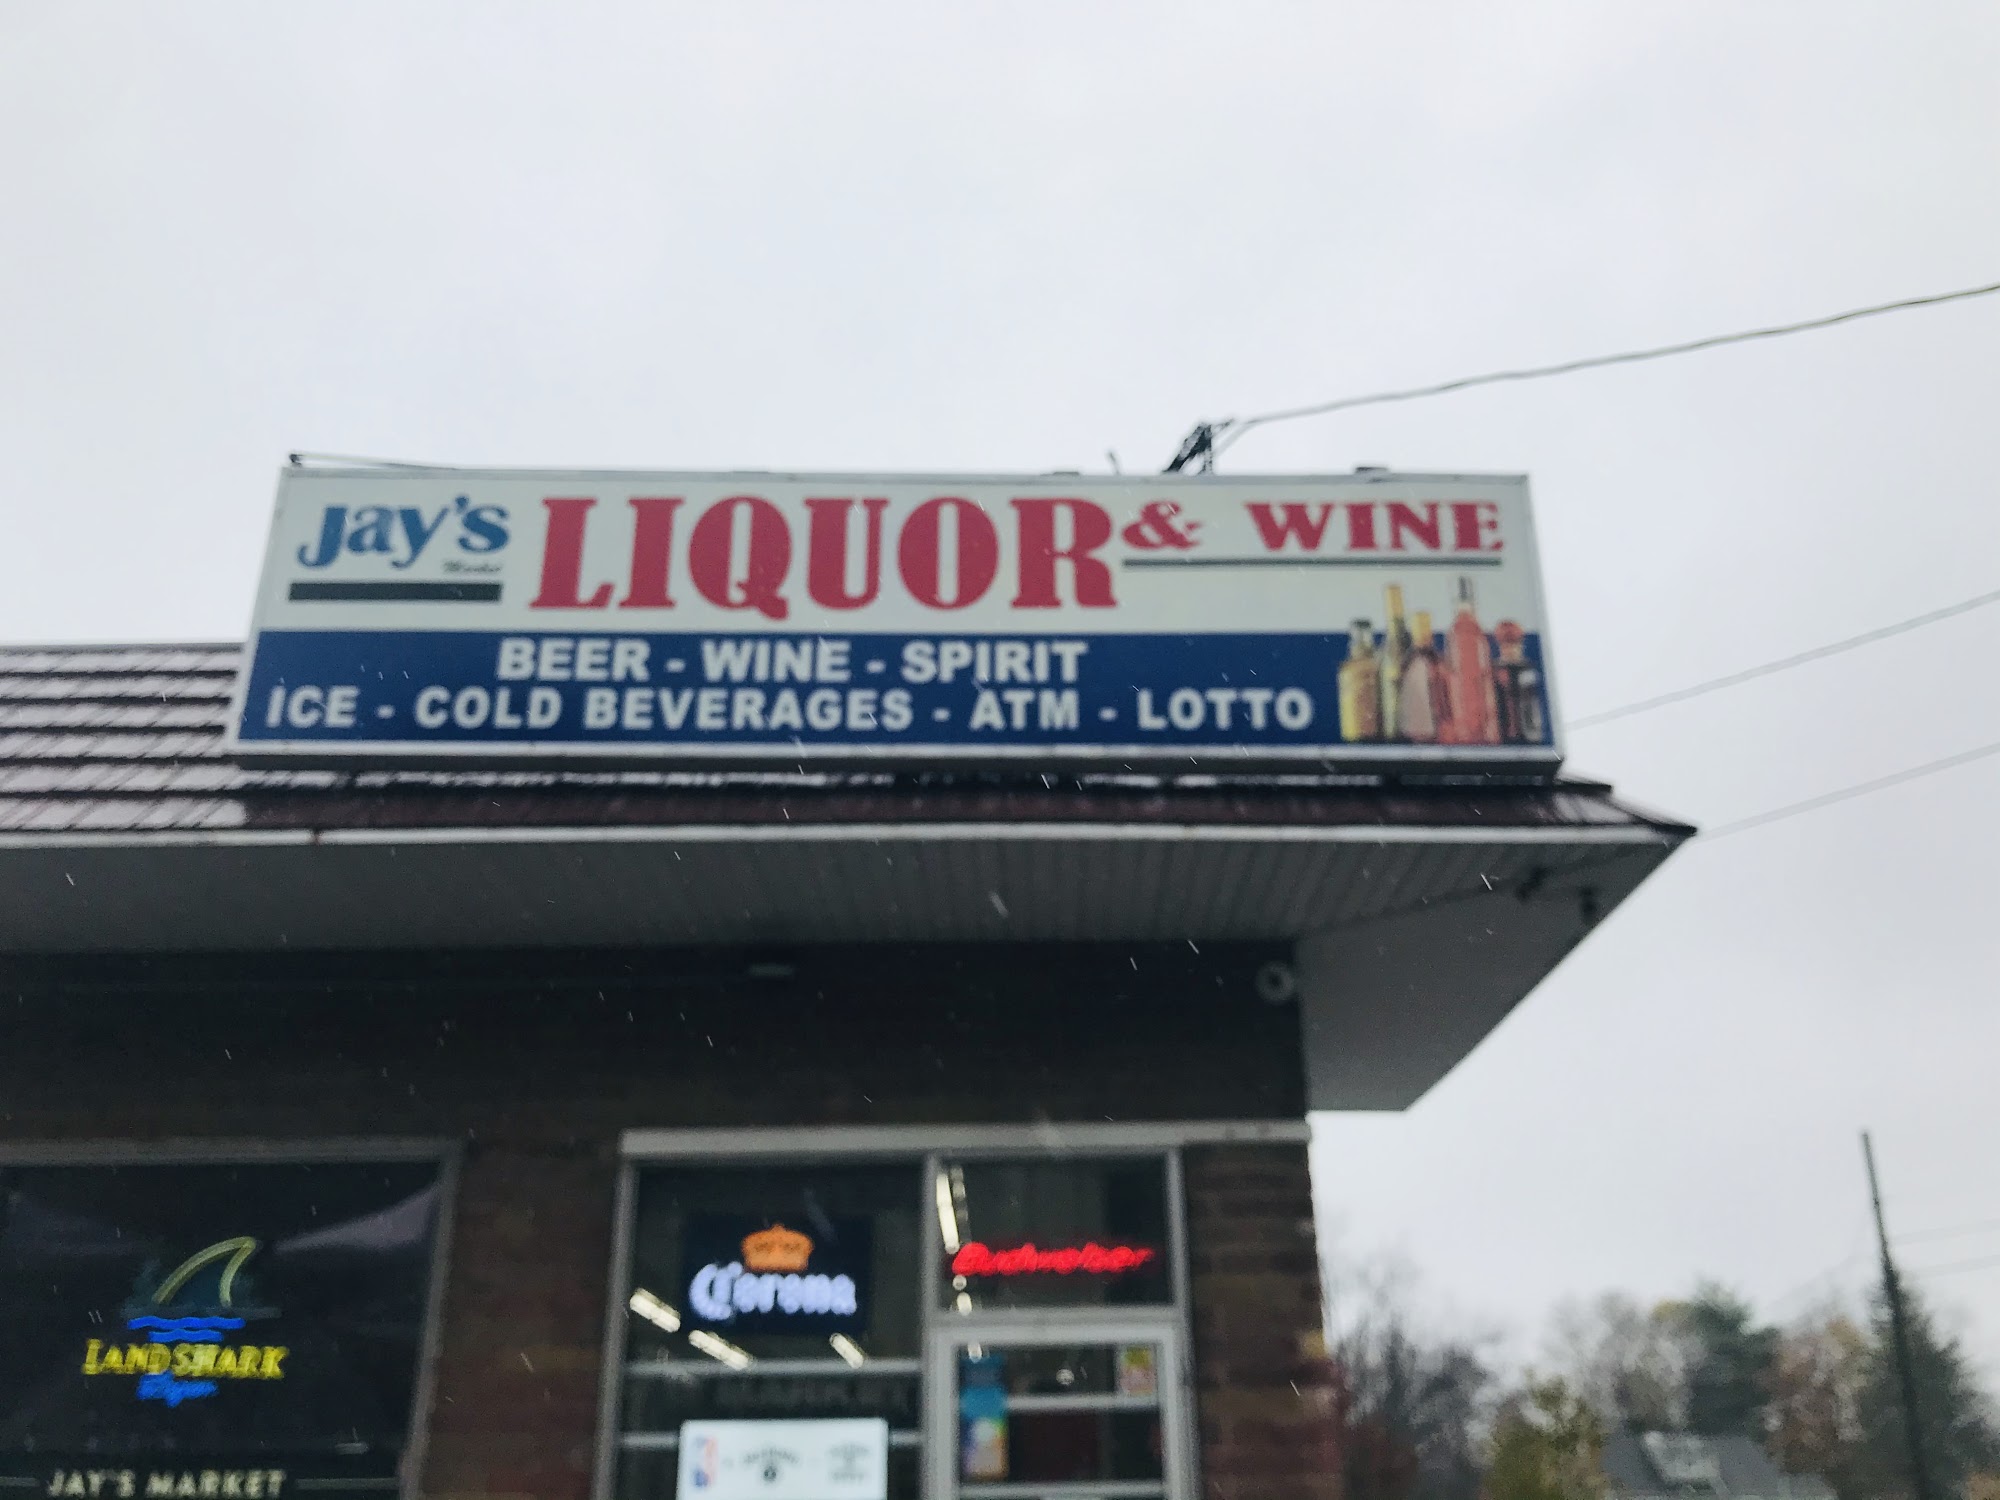 Jay's Market Liquor & Wine